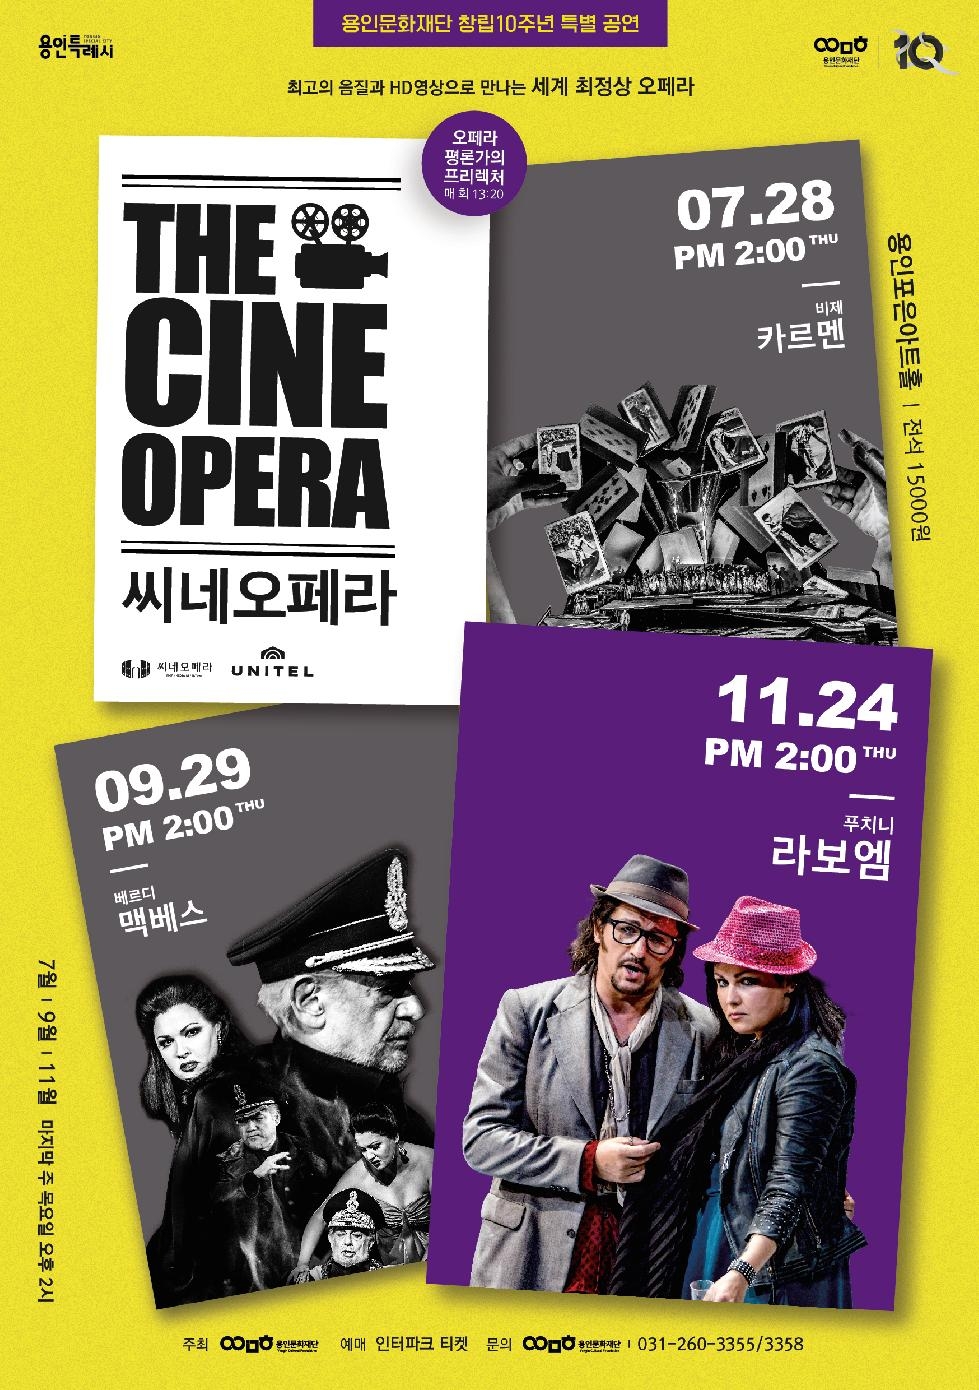 용인문화재단, 푸치니 3대 걸작 ‘라보엠’ 공연 실황 상영